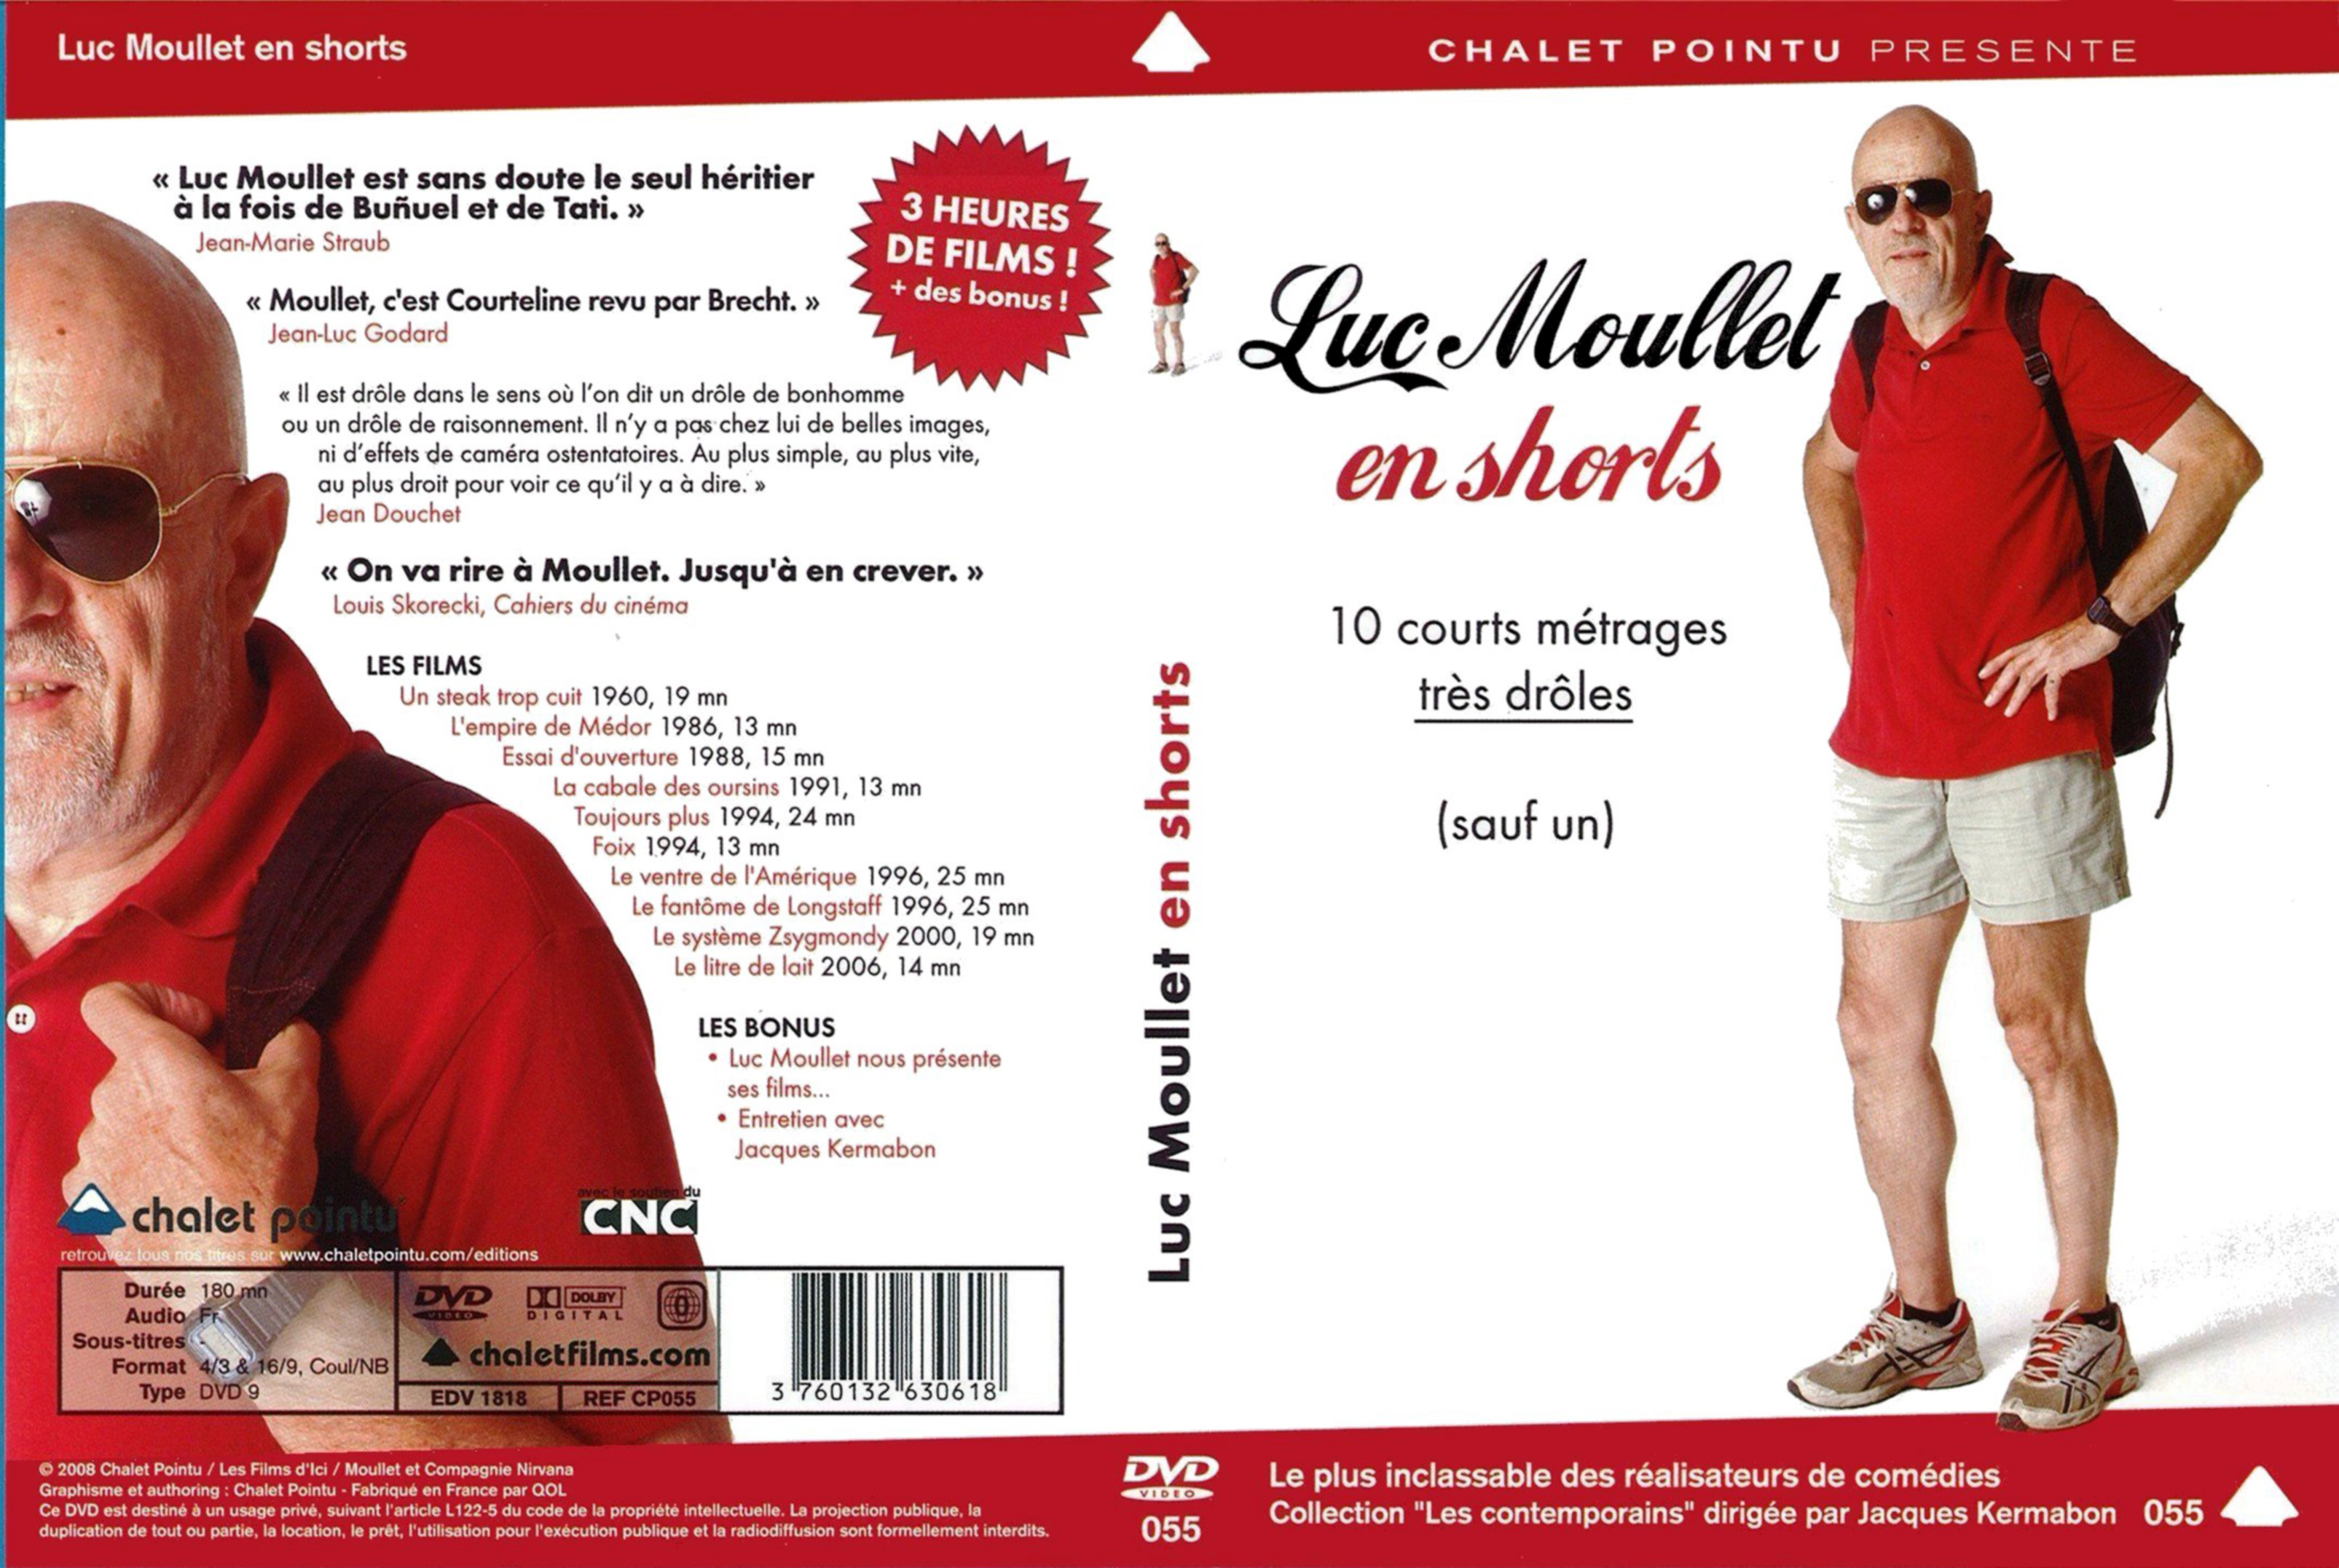 Jaquette DVD Luc Moullet en shorts